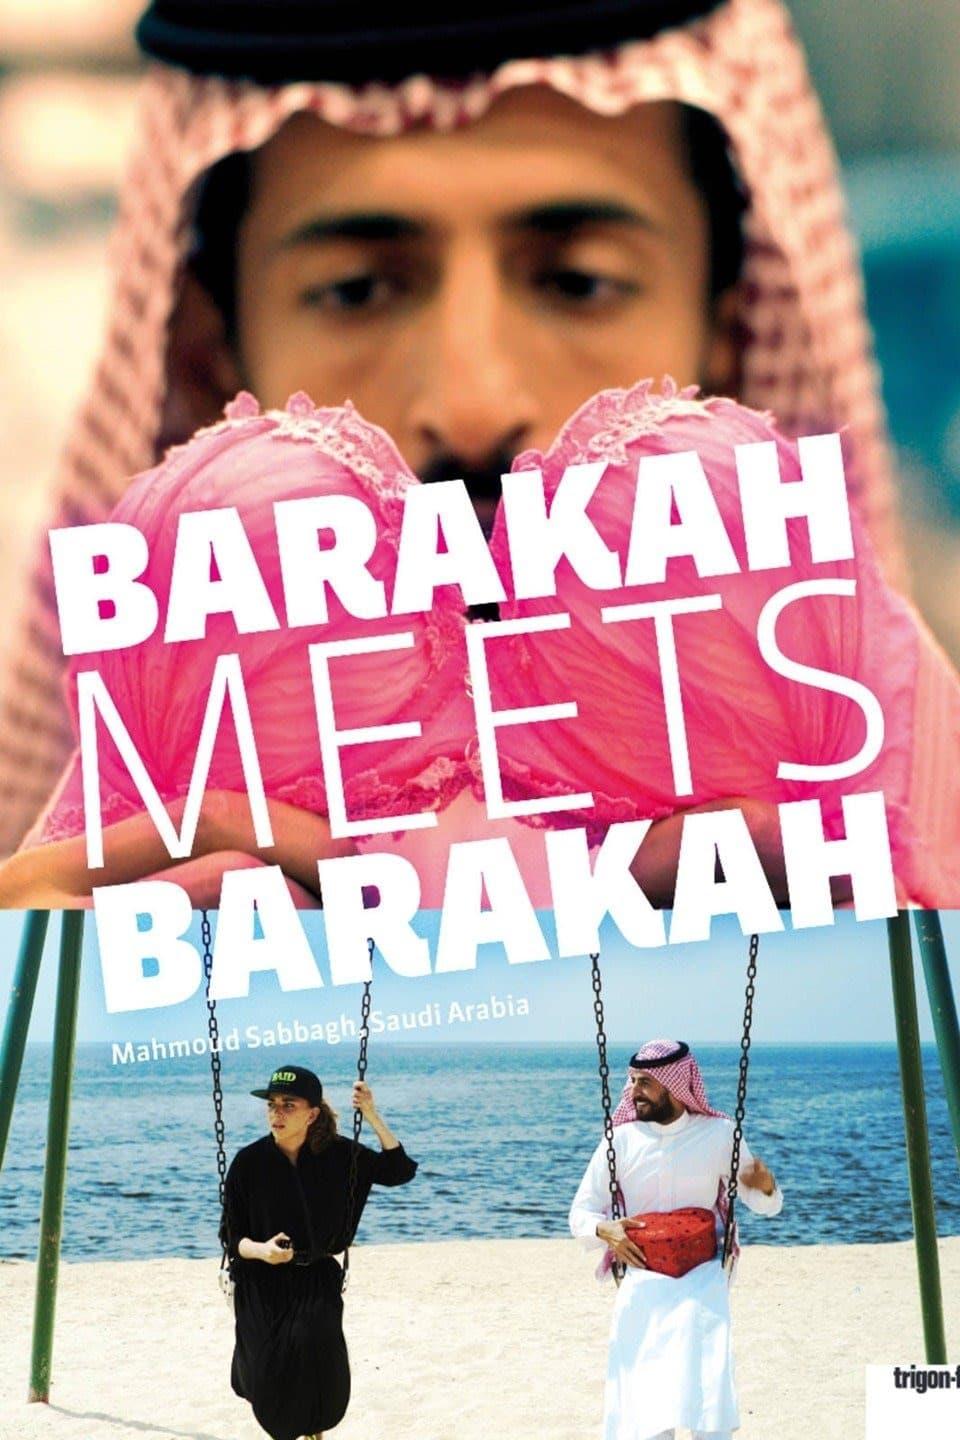 Barakah Meets Barakah poster